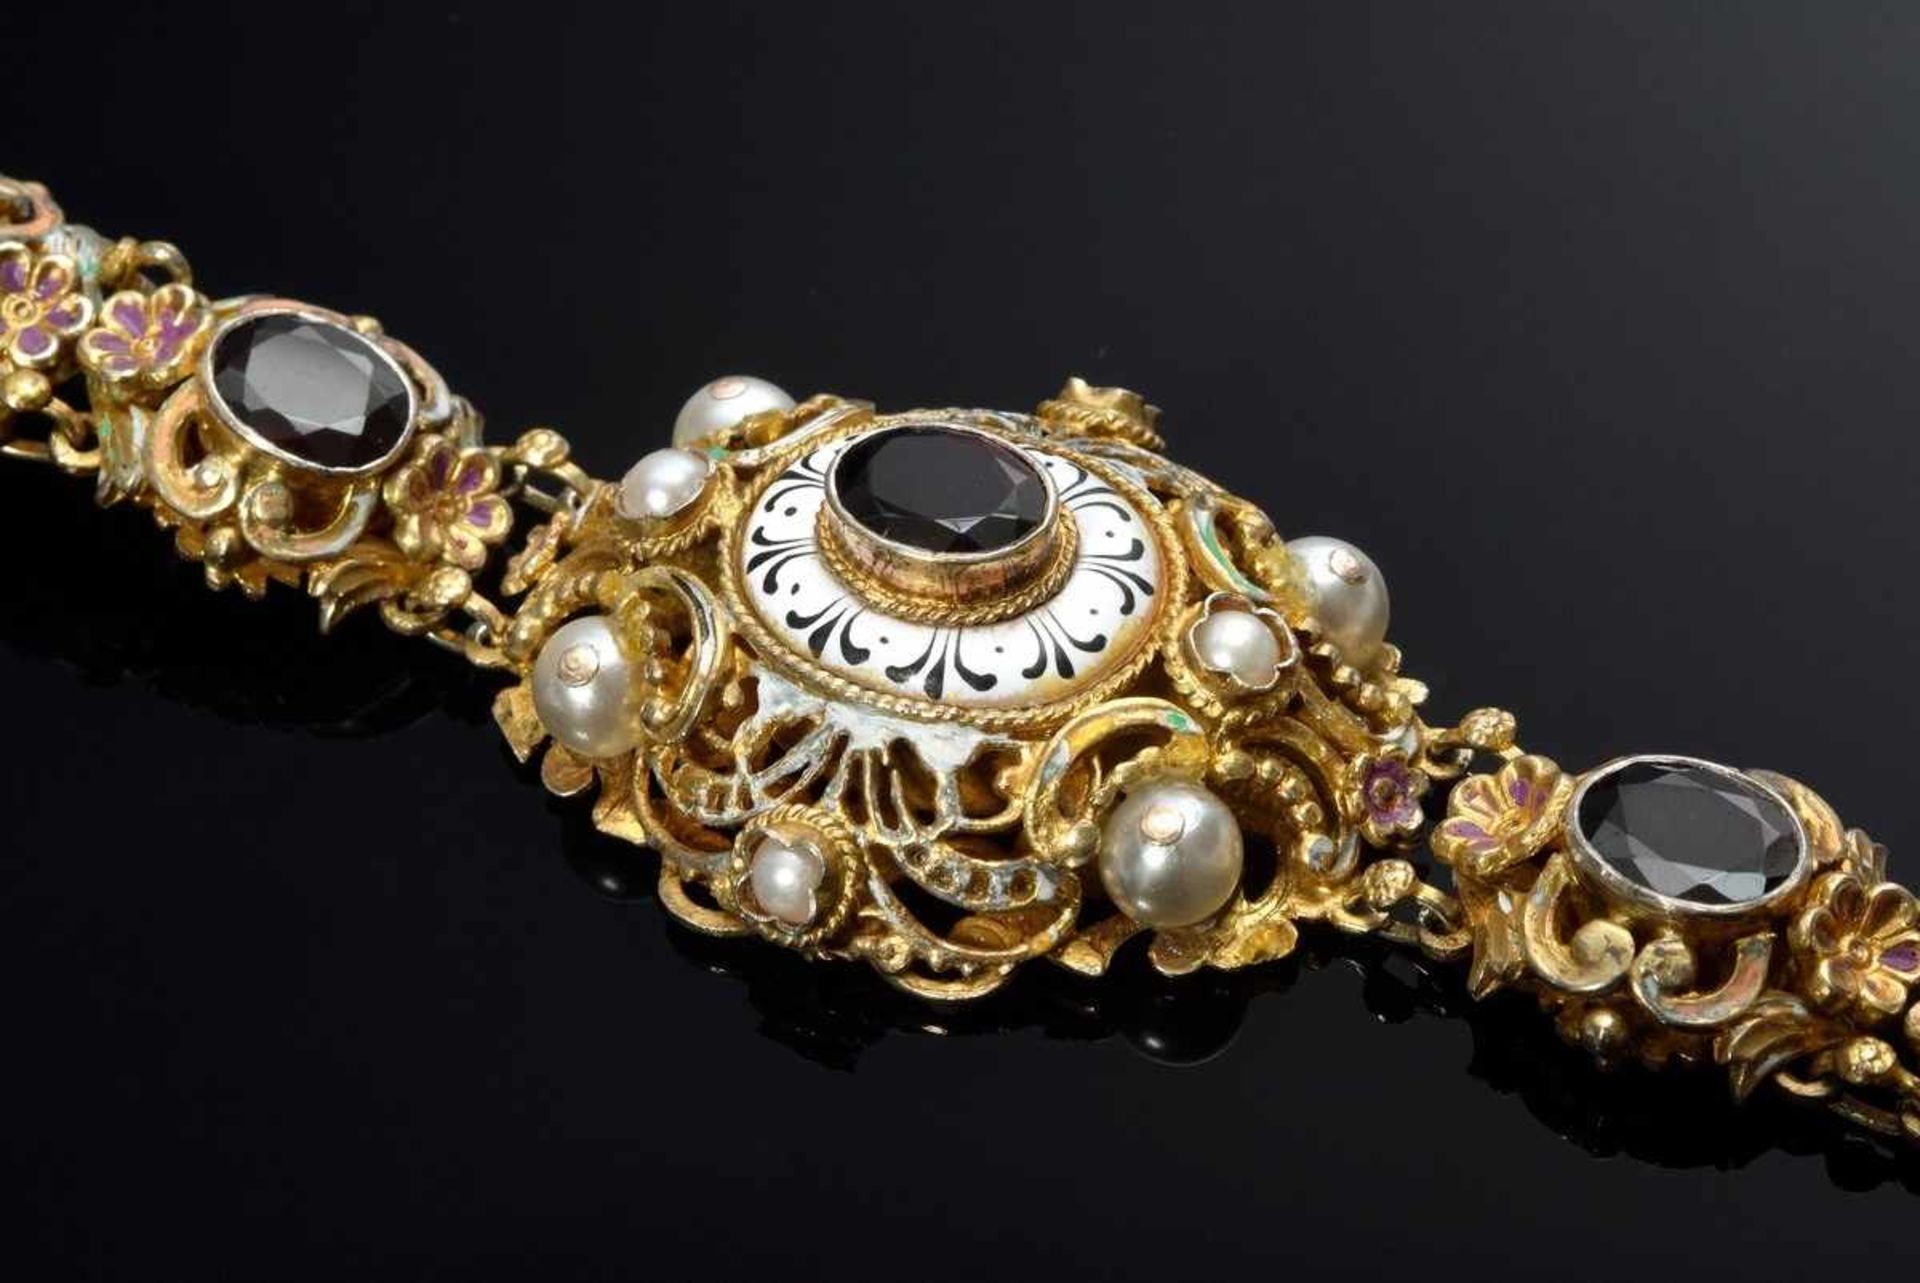 Silber 925 vergoldetes Trachtenarmband in Renaissance Façon mit Granat, Kunstperlen und Emaille, - Bild 3 aus 5